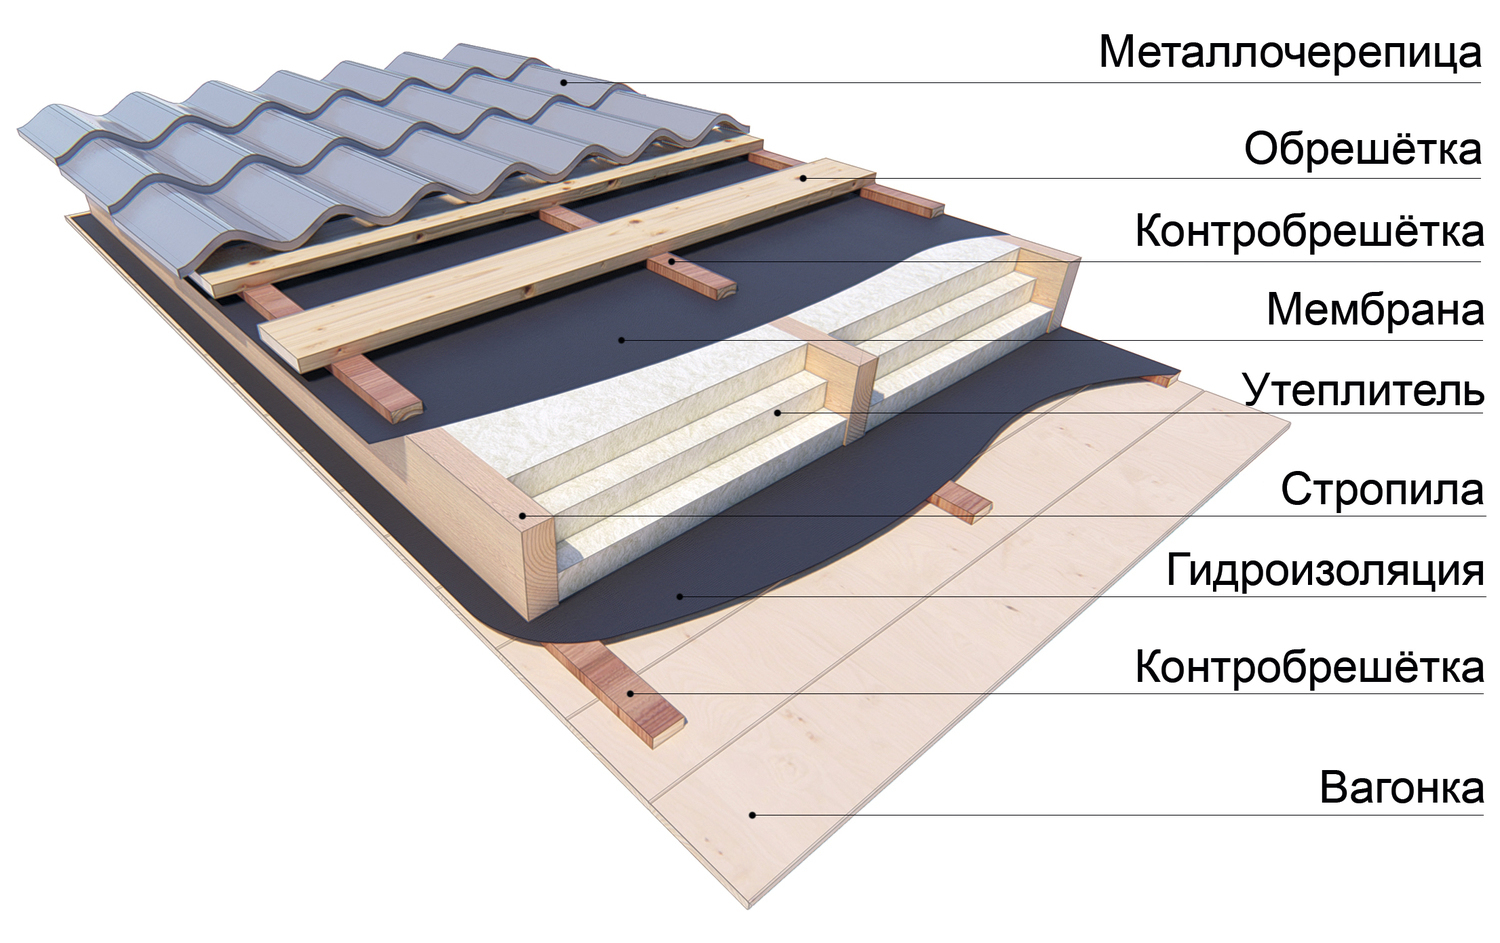 Как сделать крышу из металлочерепицы своими руками: пошаговая инструкция, термины